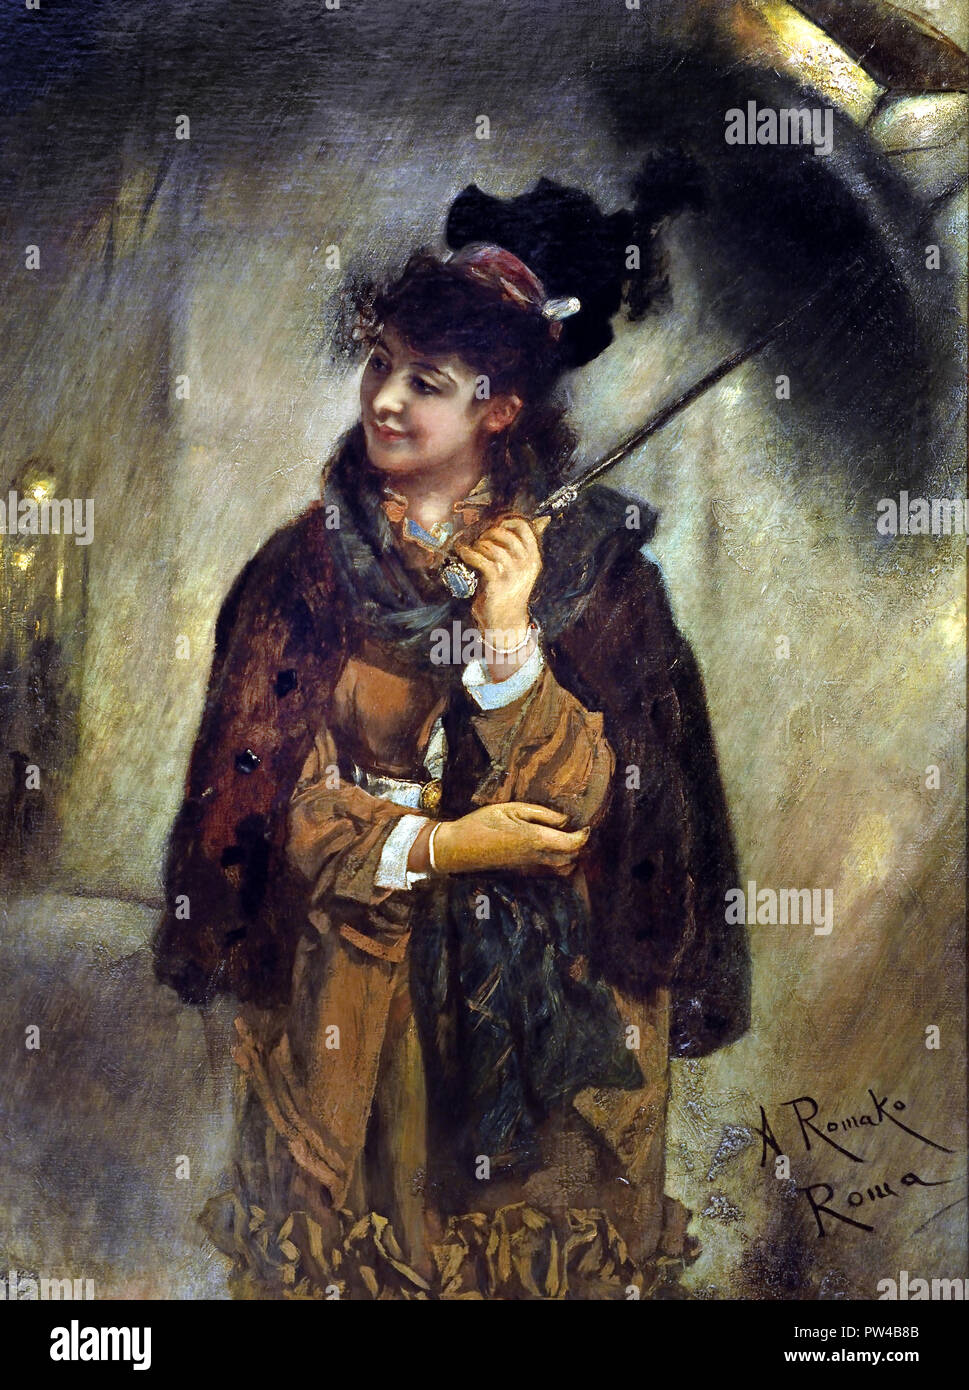 Giovane ragazza romana sotto la pioggia (sera sulla Via Veneto) da Anton Romako 1832 - 1889 pittore austriaco. Austria . ( Anton Romako è stato uno dei grandi pionieri del modernismo ) Foto Stock